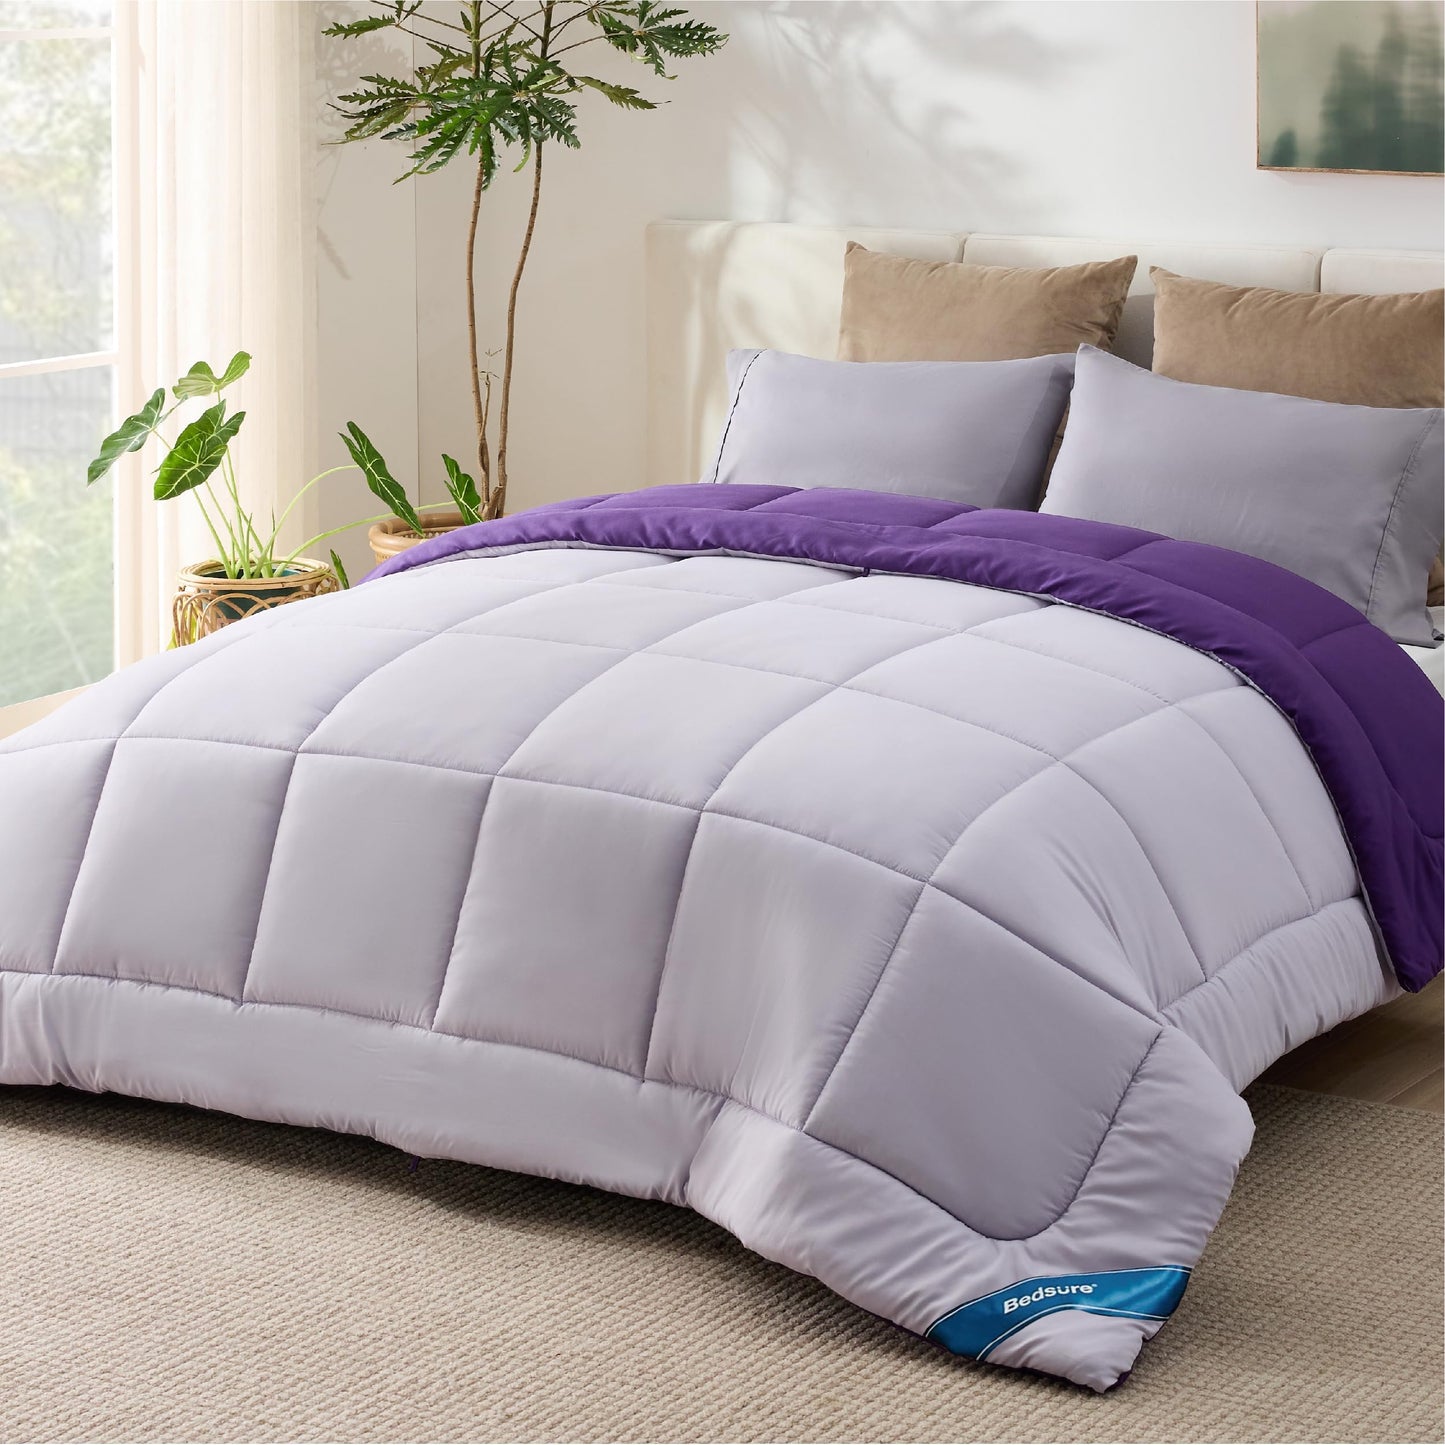 Bedsure Queen Reversible Comforter Duvet Insert - All Season Quilted Comforters Queen Size, Down Alternative Queen Size Bedding Comforter with Corner Tabs - Plum/Light Purple